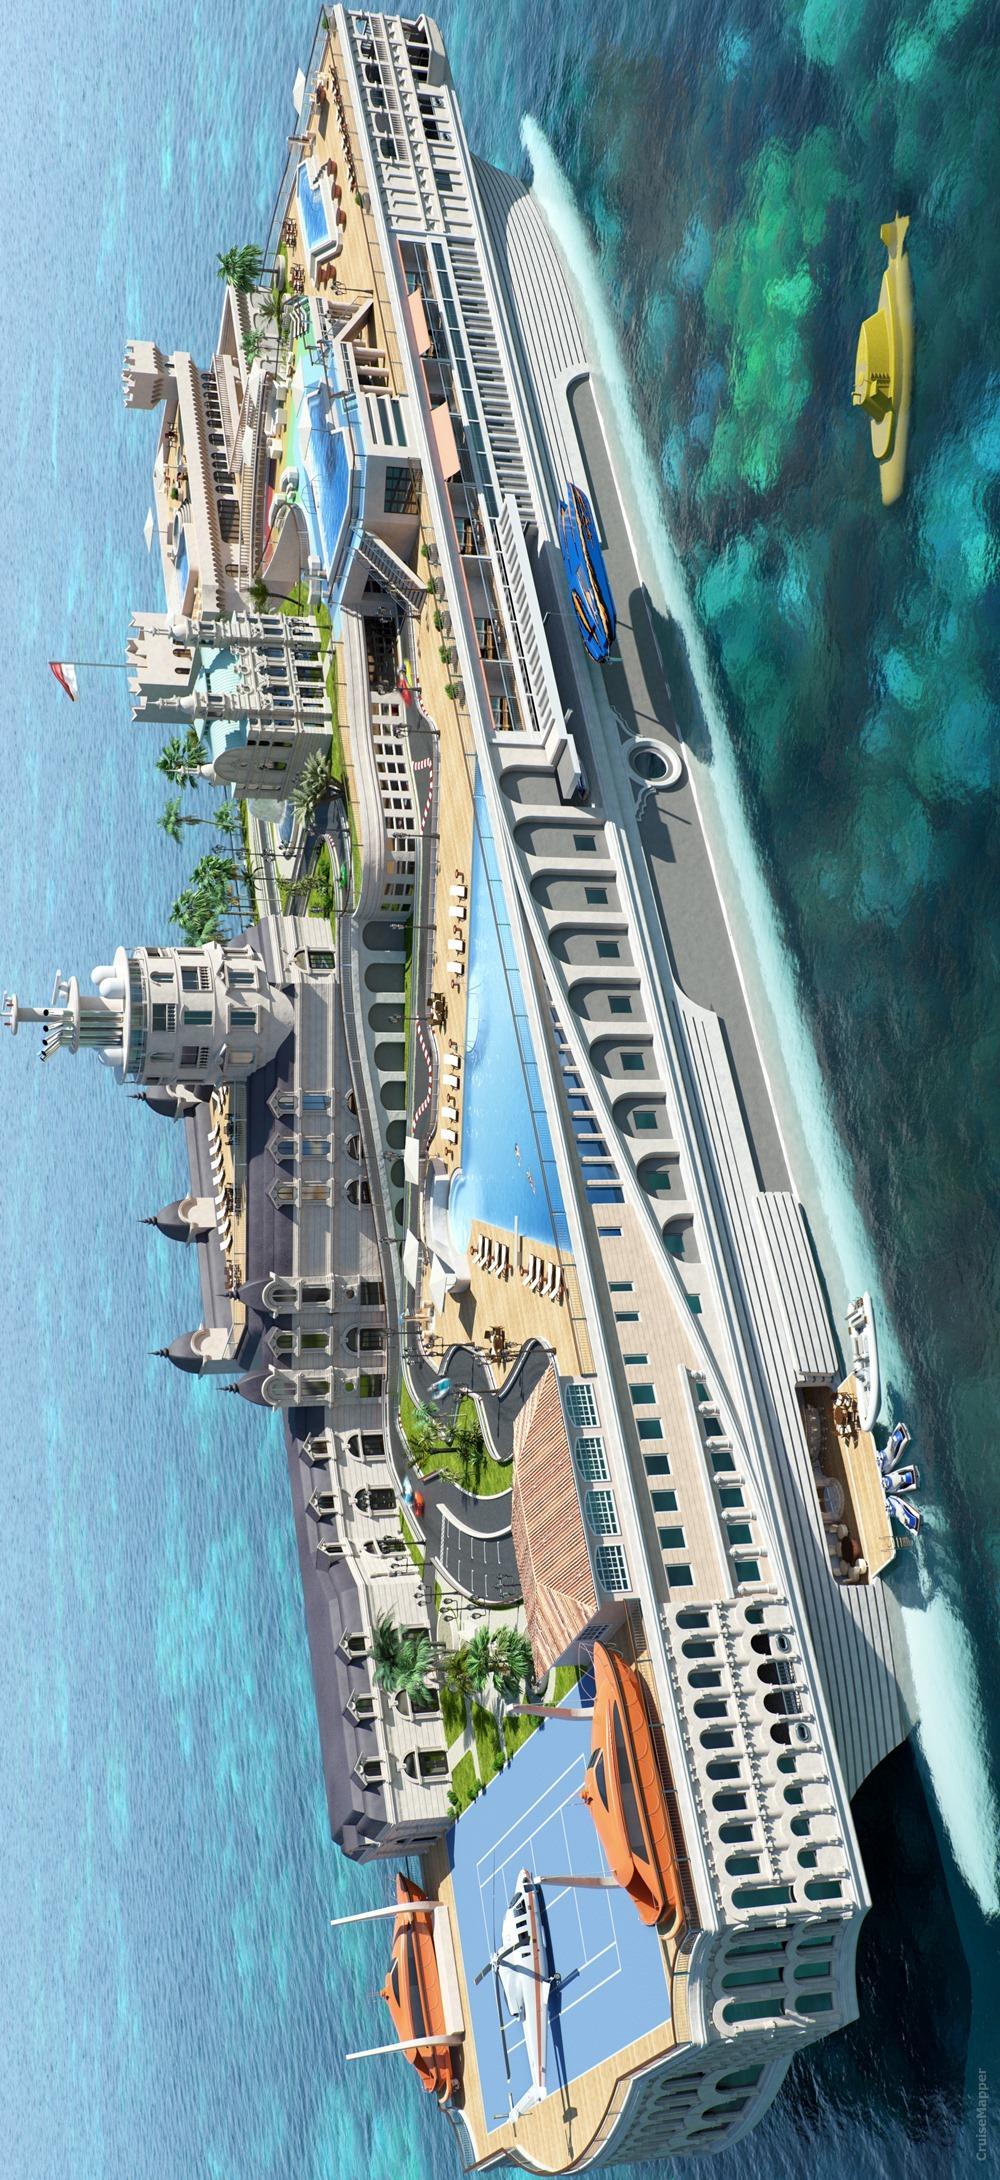 Streets of Monaco Superyacht design